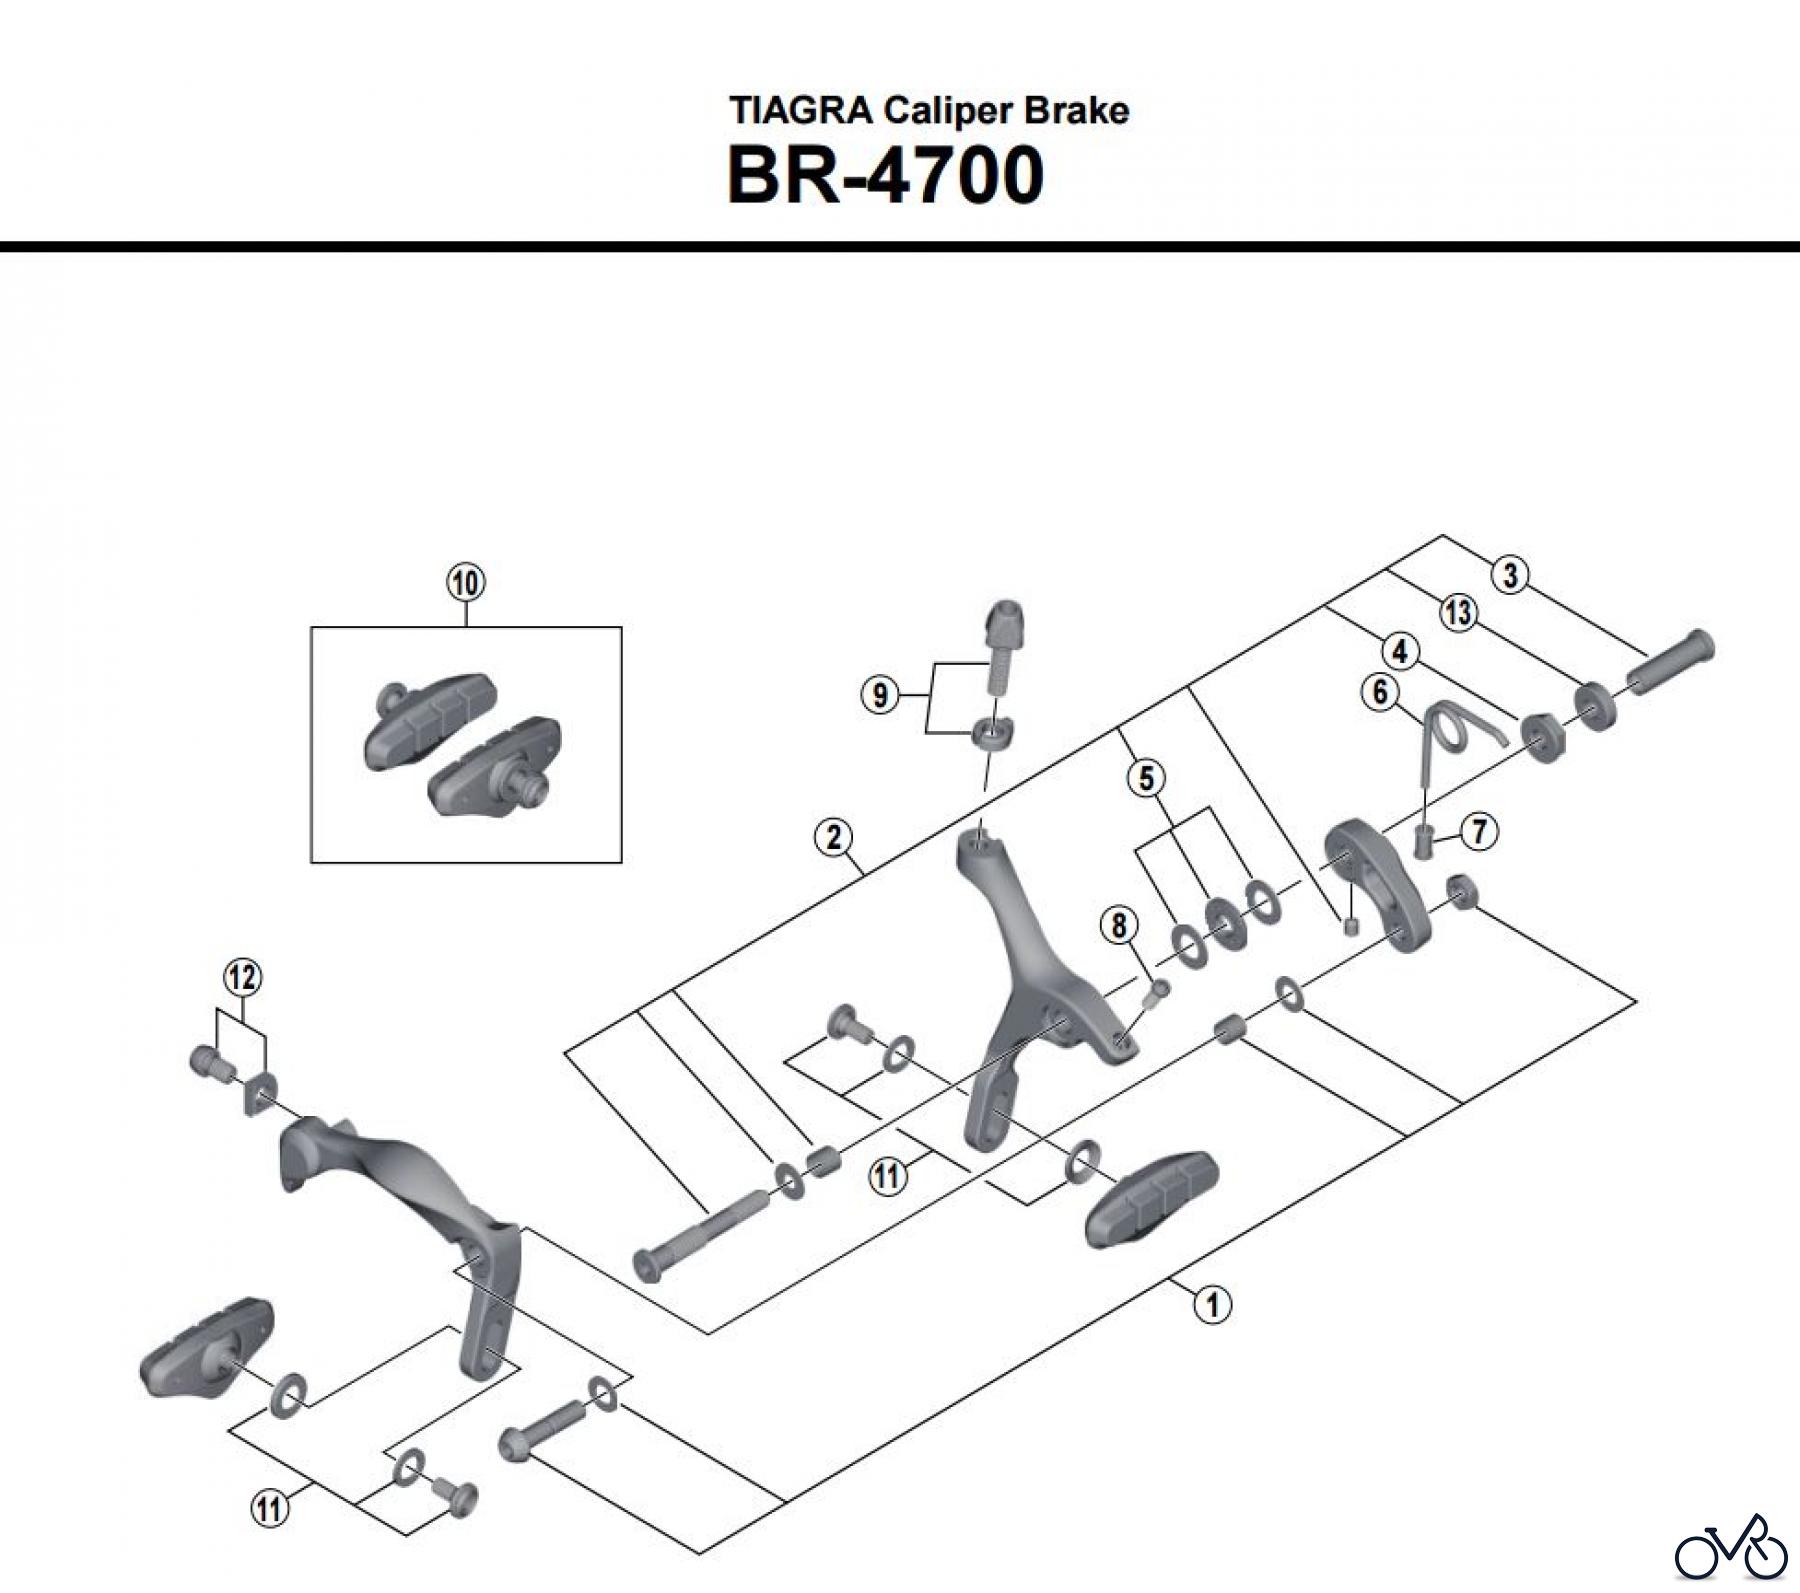  Shimano BR Brake - Bremse BR-4700 -3865A